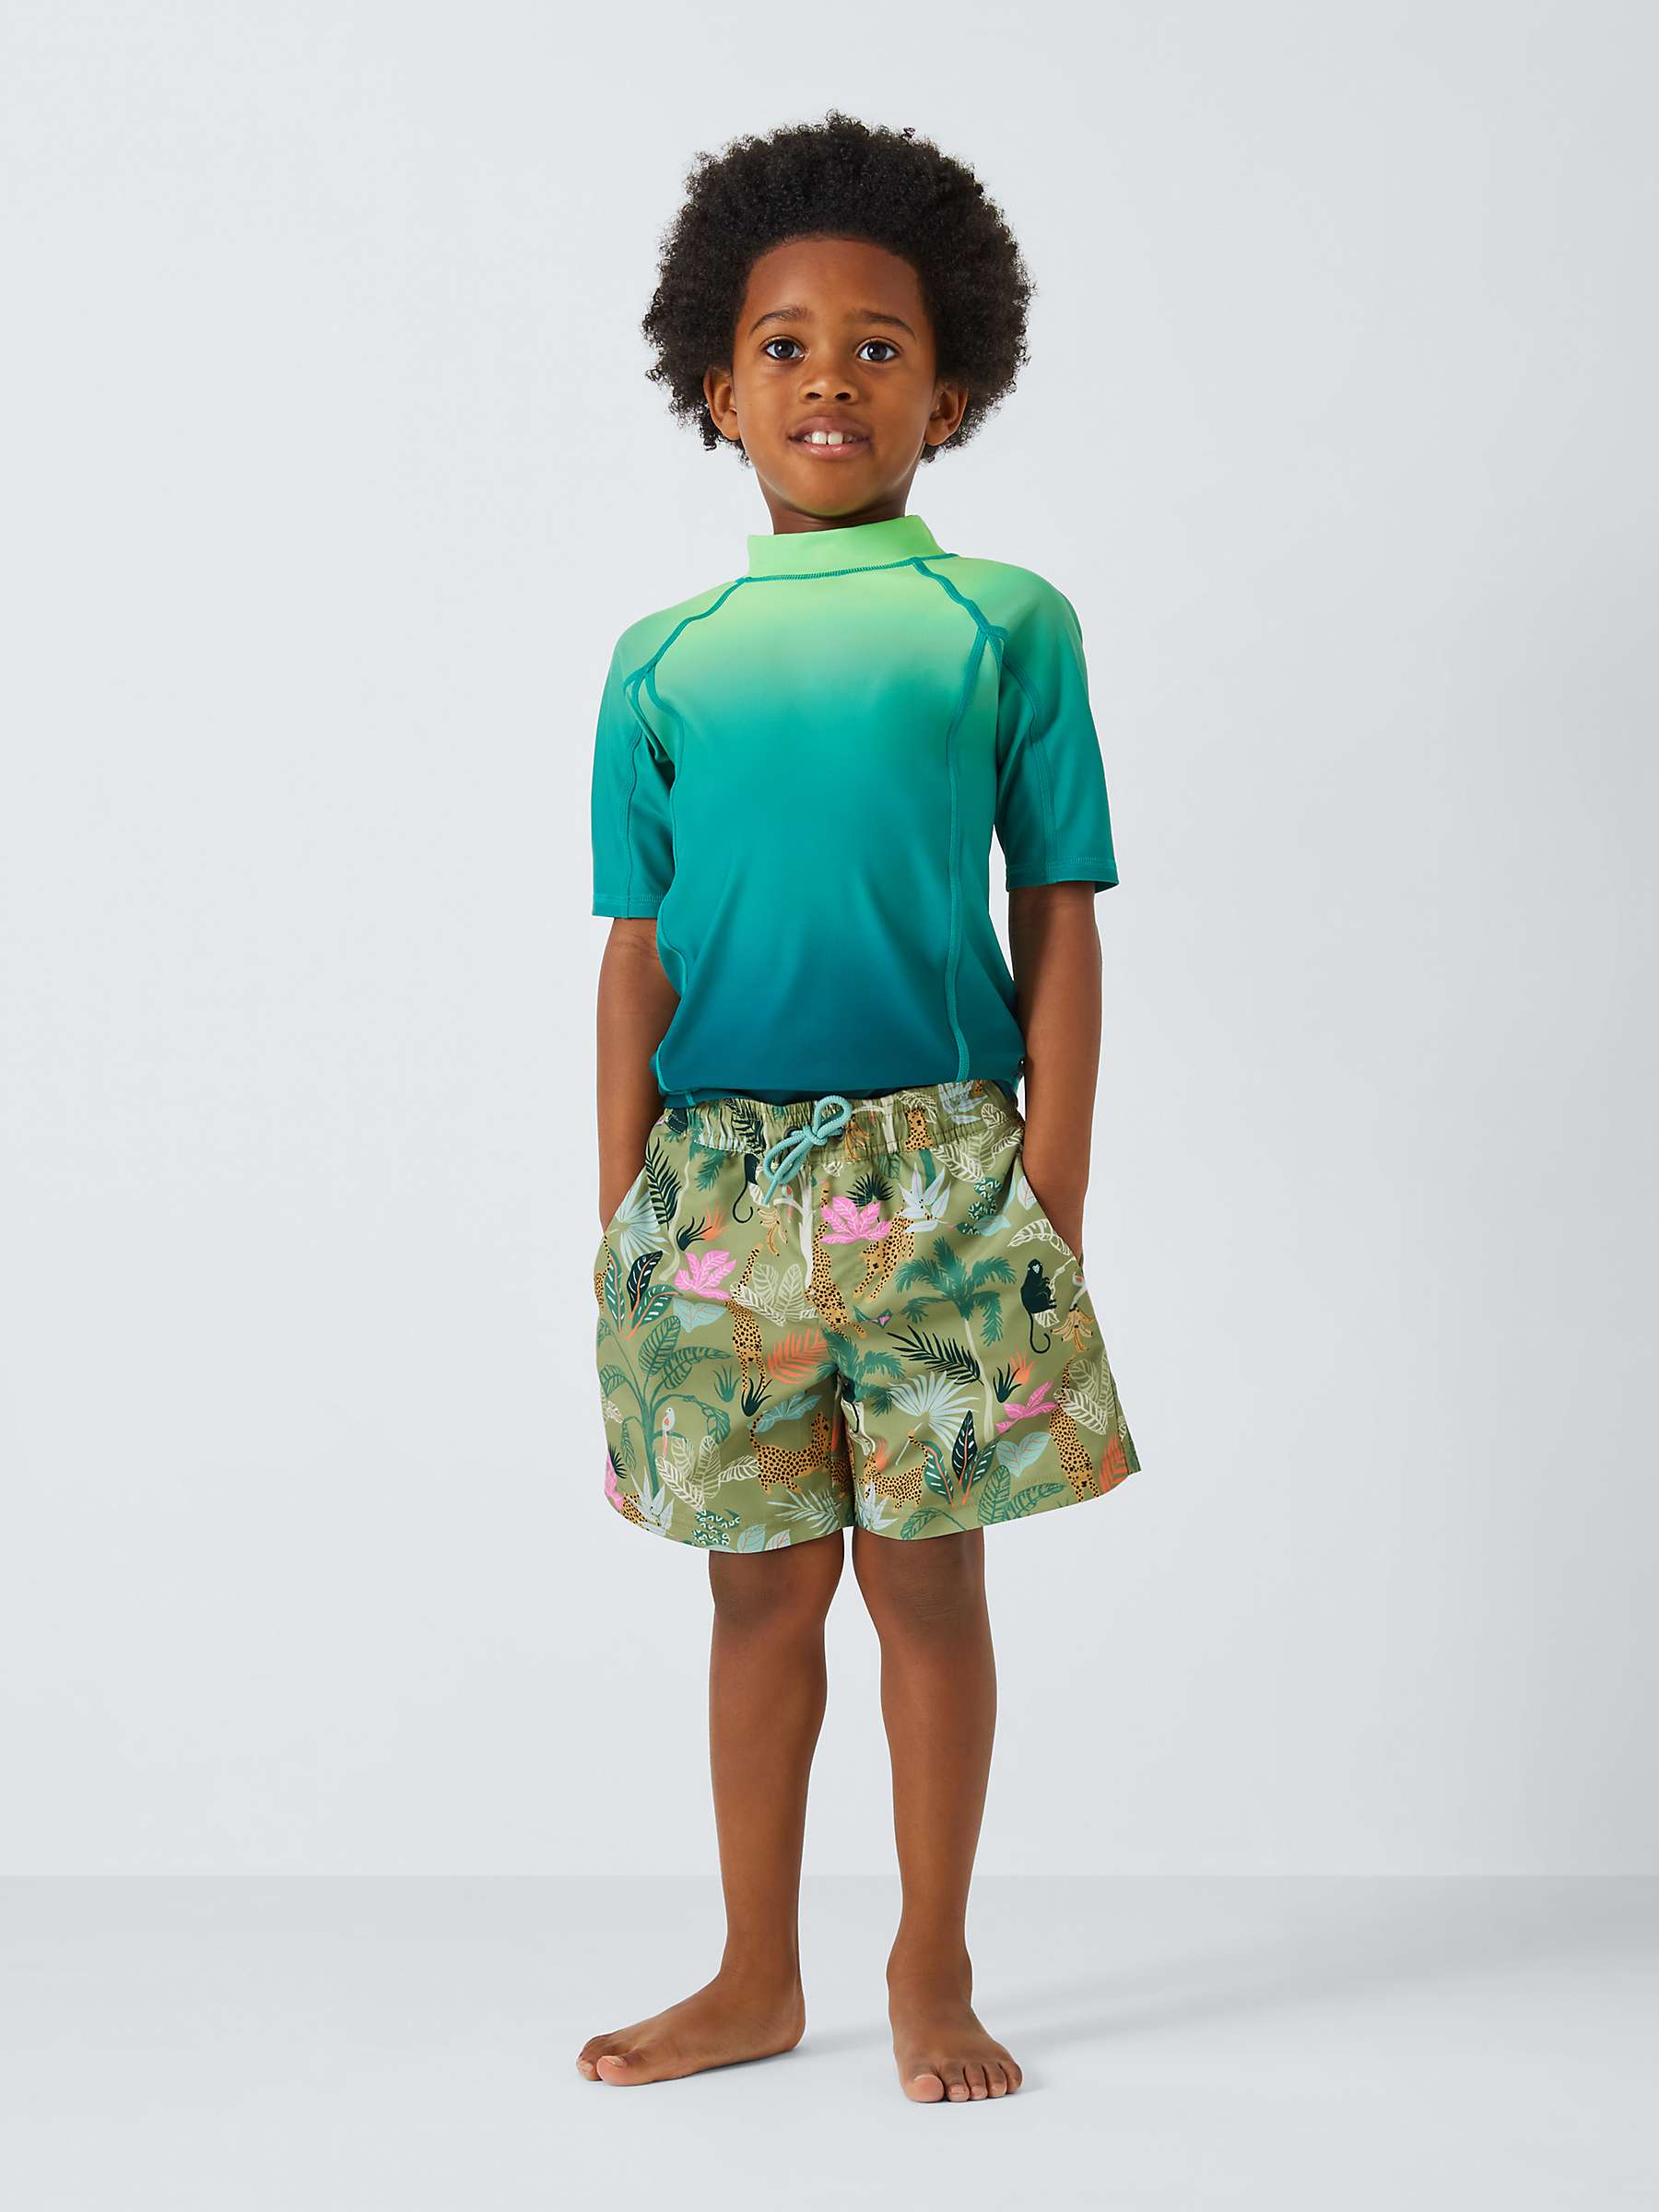 Buy John Lewis Kids' Palm Tree Swim Shorts, Khaki/Multi Online at johnlewis.com